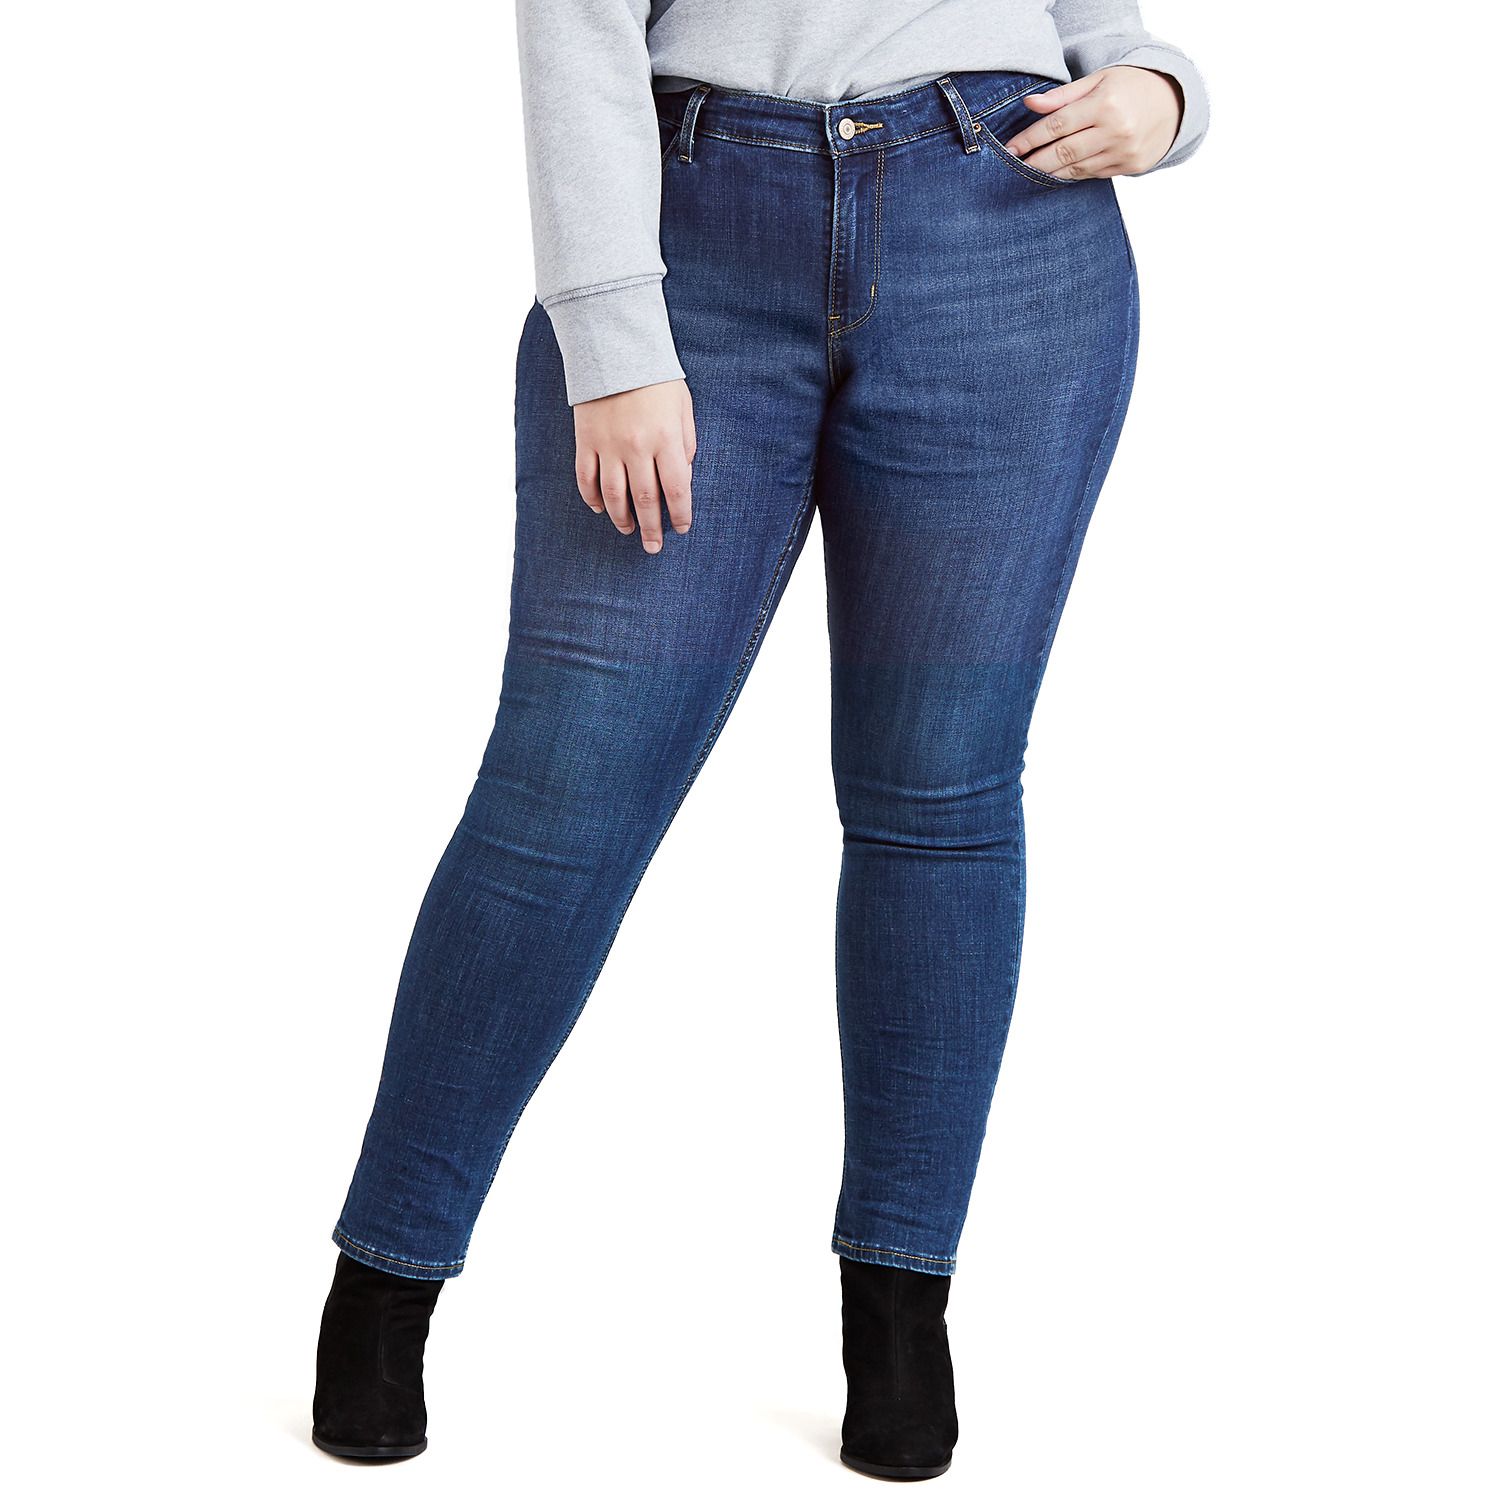 levi's 711 jeans sale